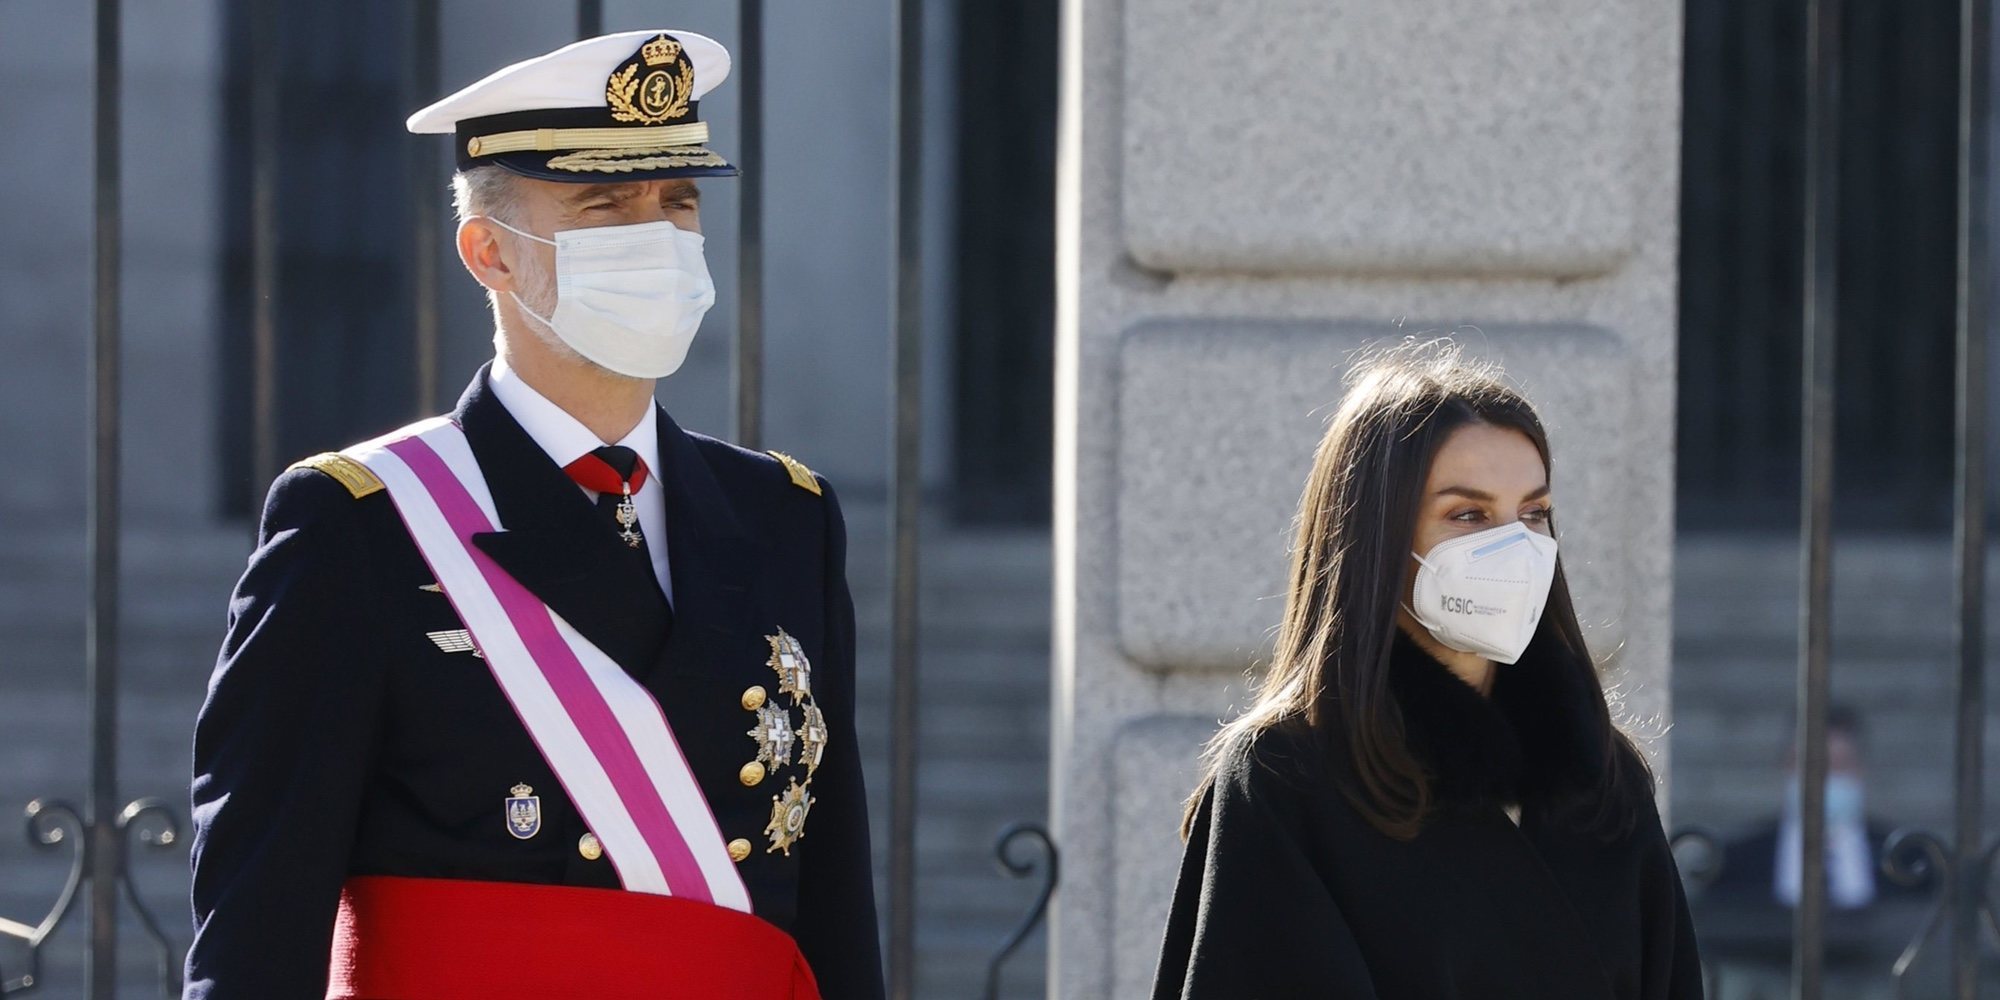 Los Reyes Felipe y Letizia presiden la atípica Pascua Militar 2021 marcada por la pandemia